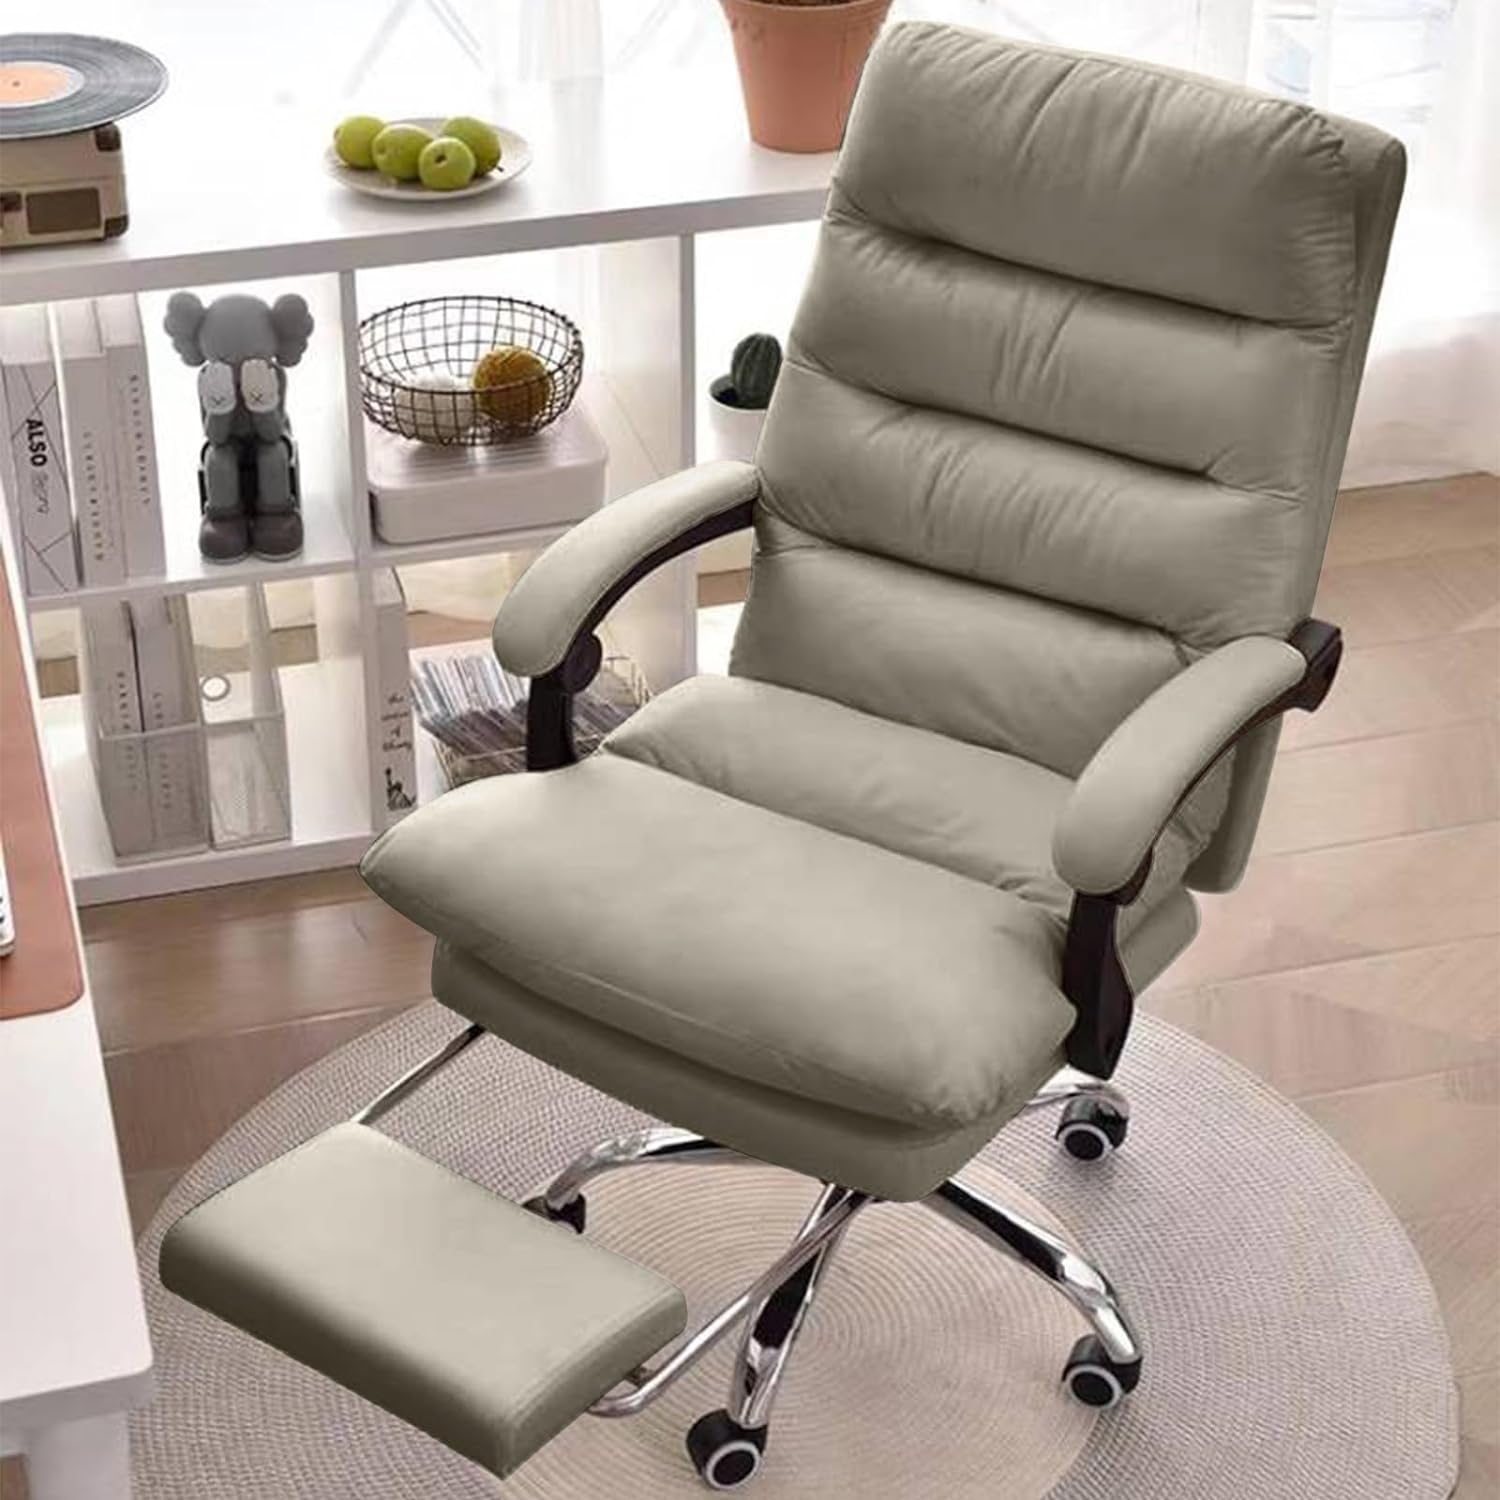 オフィスチェア 社長椅子 リクライニング ハイバック ホワイト 人間工学 回転可能 在宅勤務 PUレザー 通気性 静音キャスター 座面昇降機能